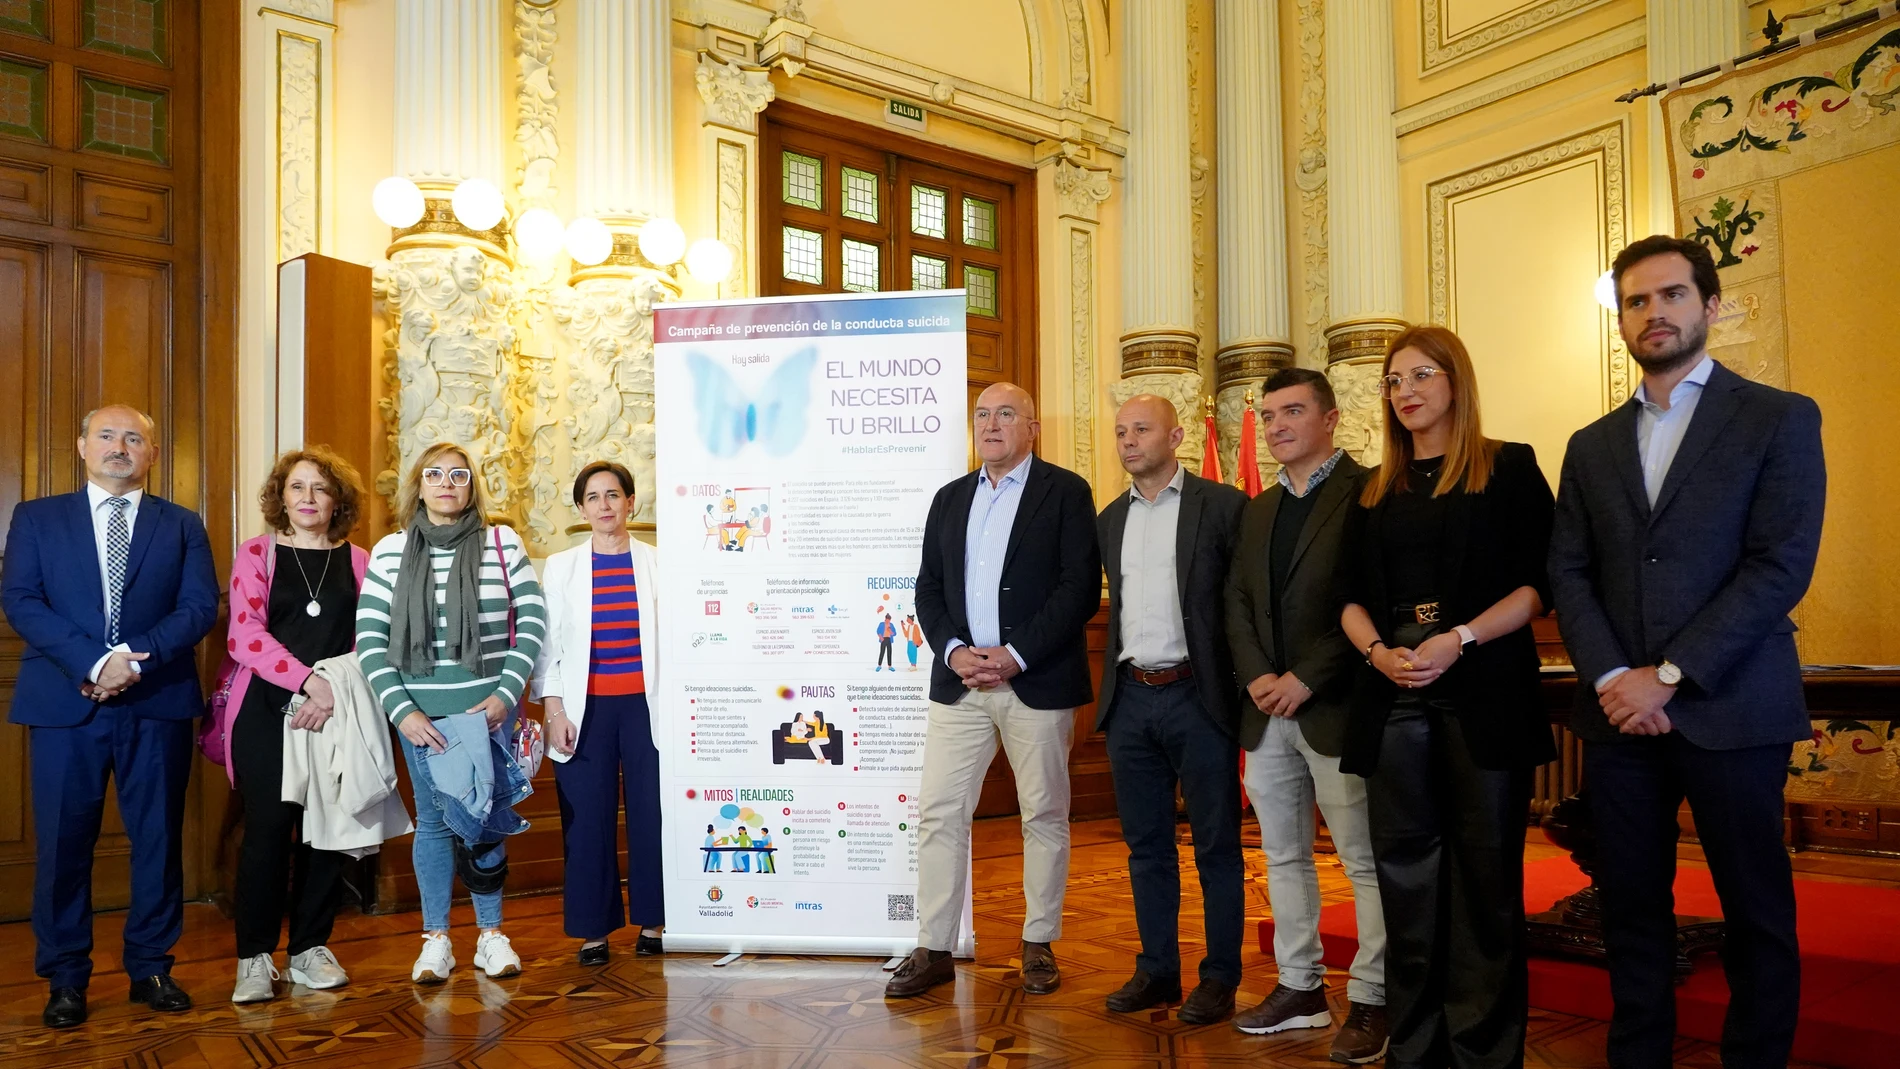 El alcalde de Valladolid, Jesús Julio Carnero, presenta la campaña "Hay salida. El mundo necesita tu brillo"